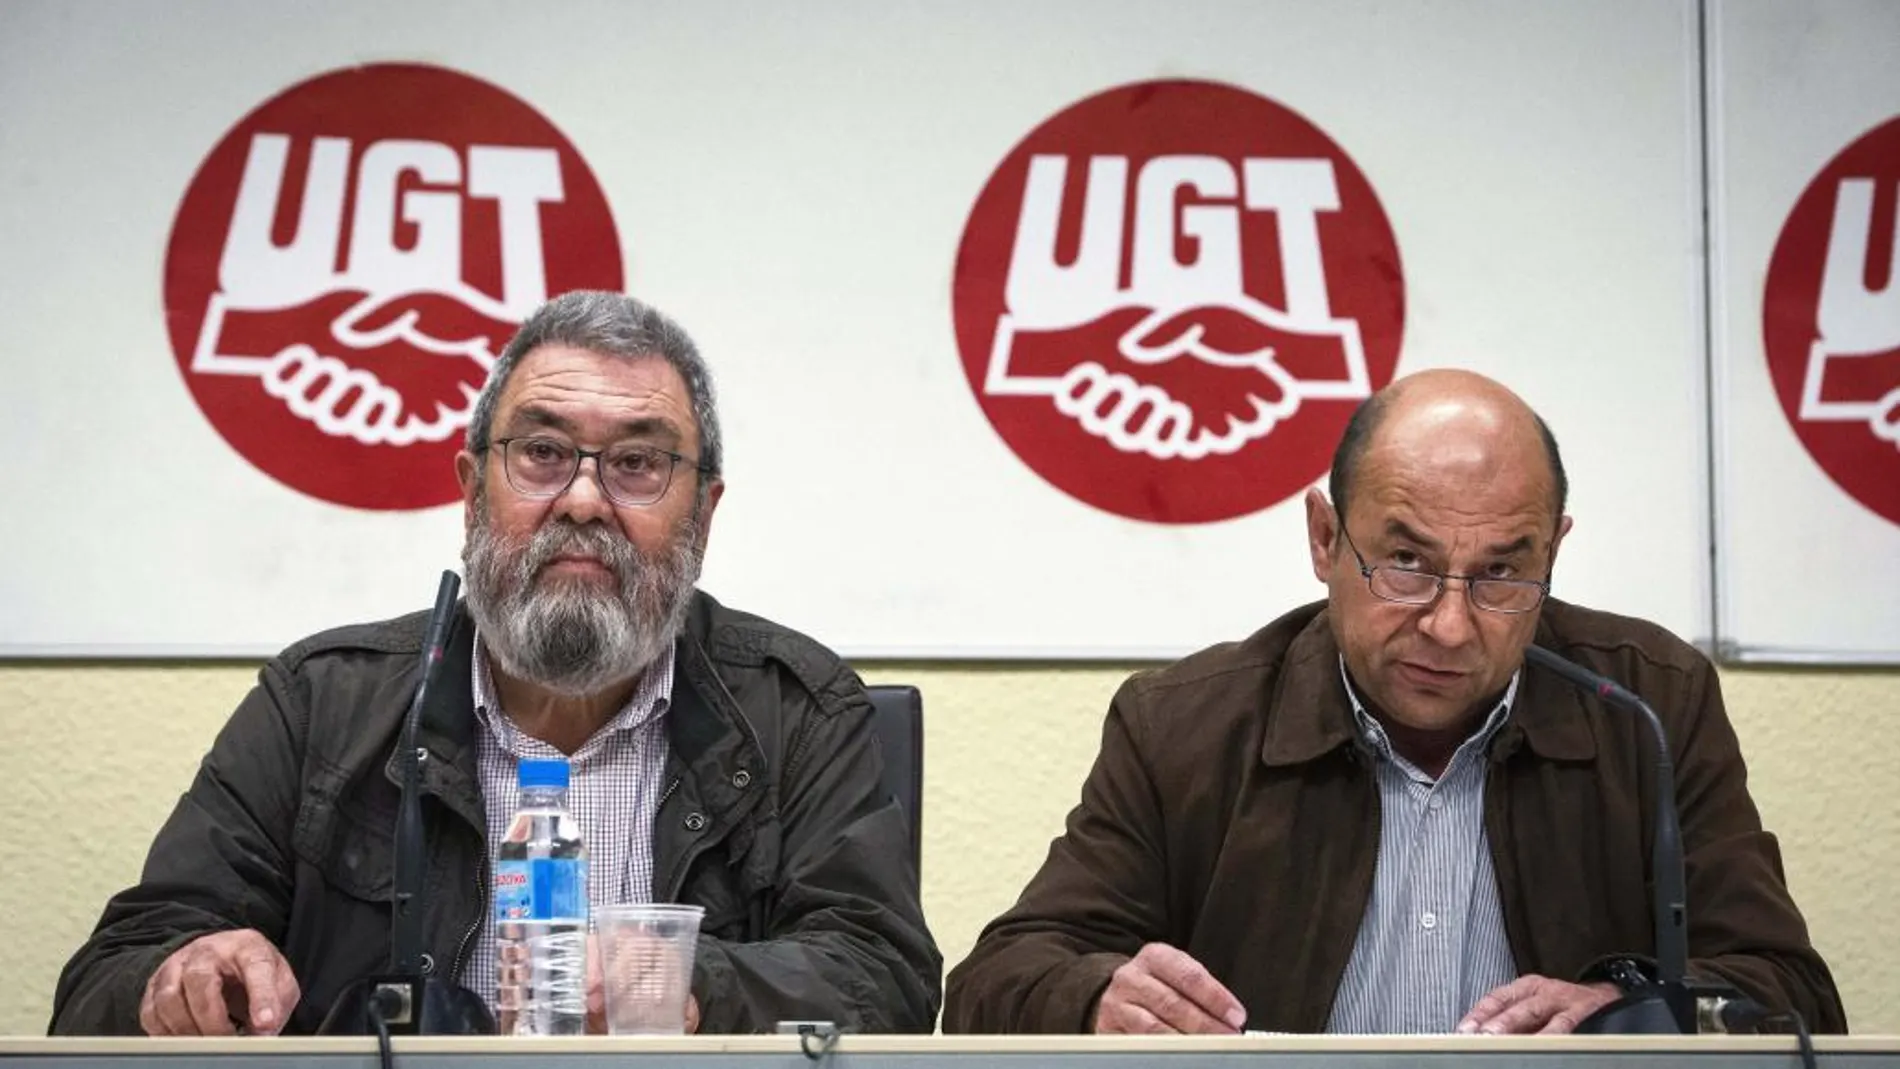 El Secretario general del sindicato UGT, Candido Mendez y el secretario general de Aragón, Daniel Alastuey, durante la rueda de prensa